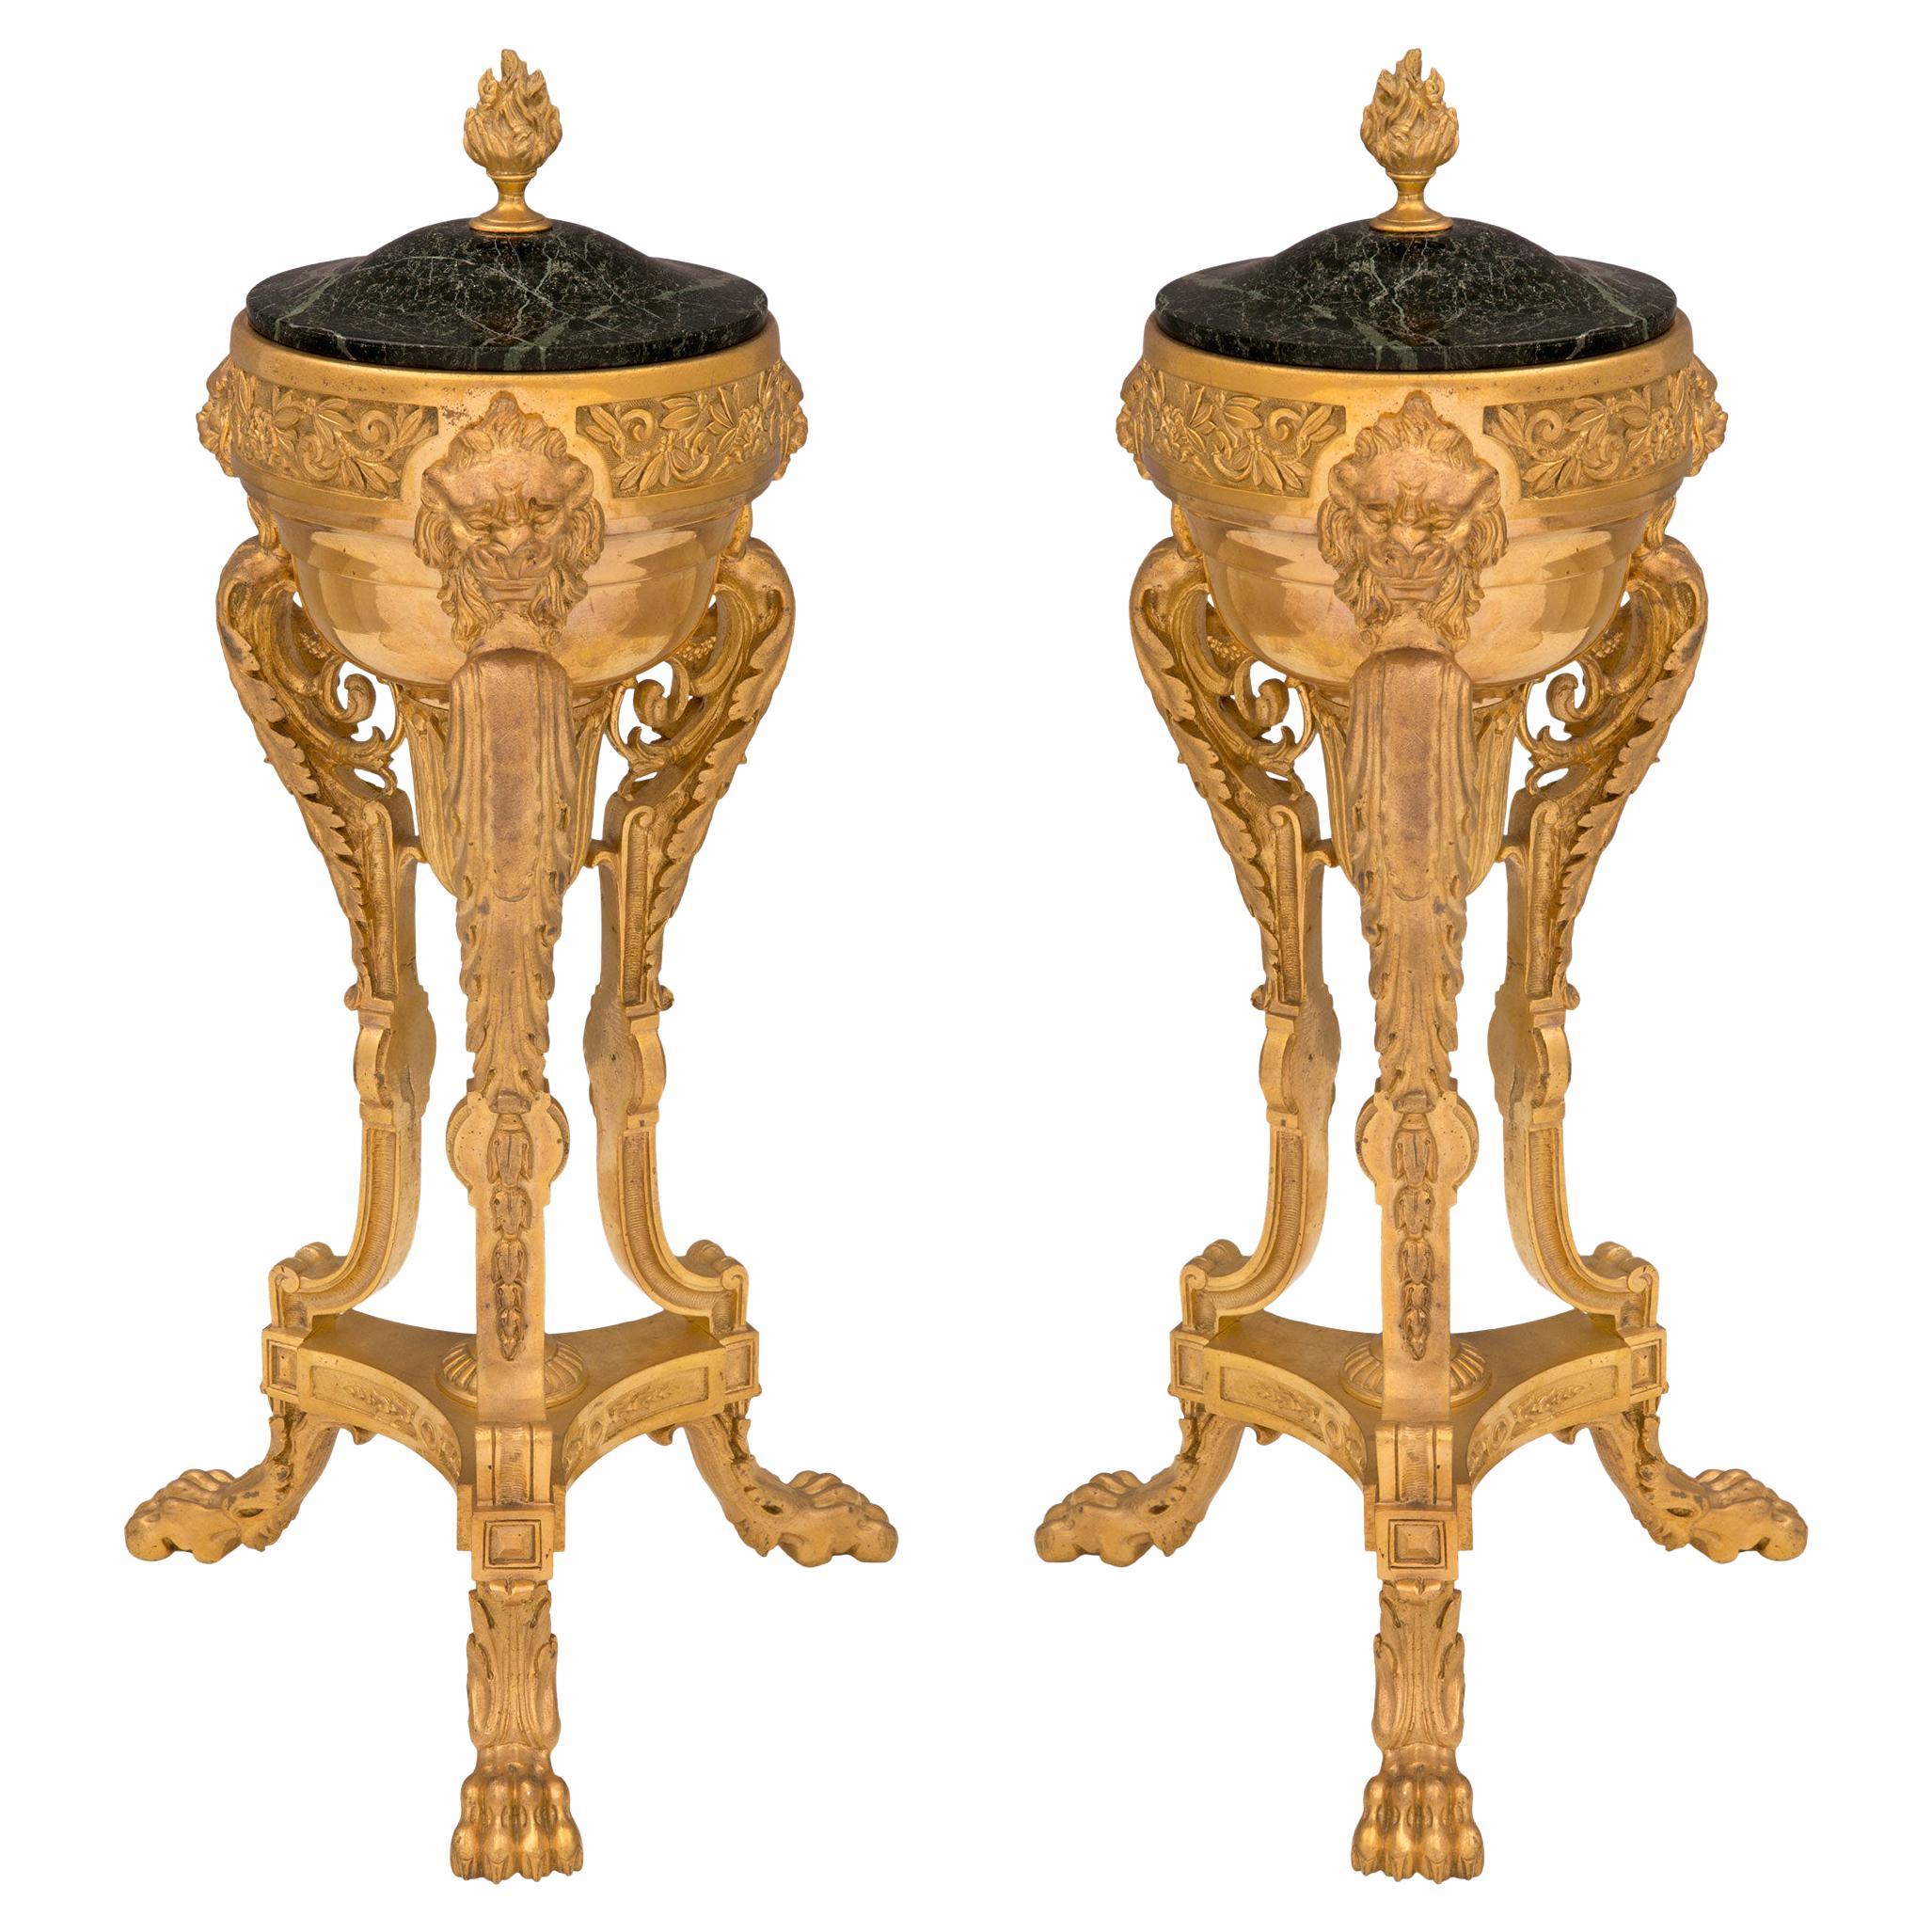 Paire d'urnes à couvercle en bronze doré et marbre de style néoclassique du 19ème siècle français